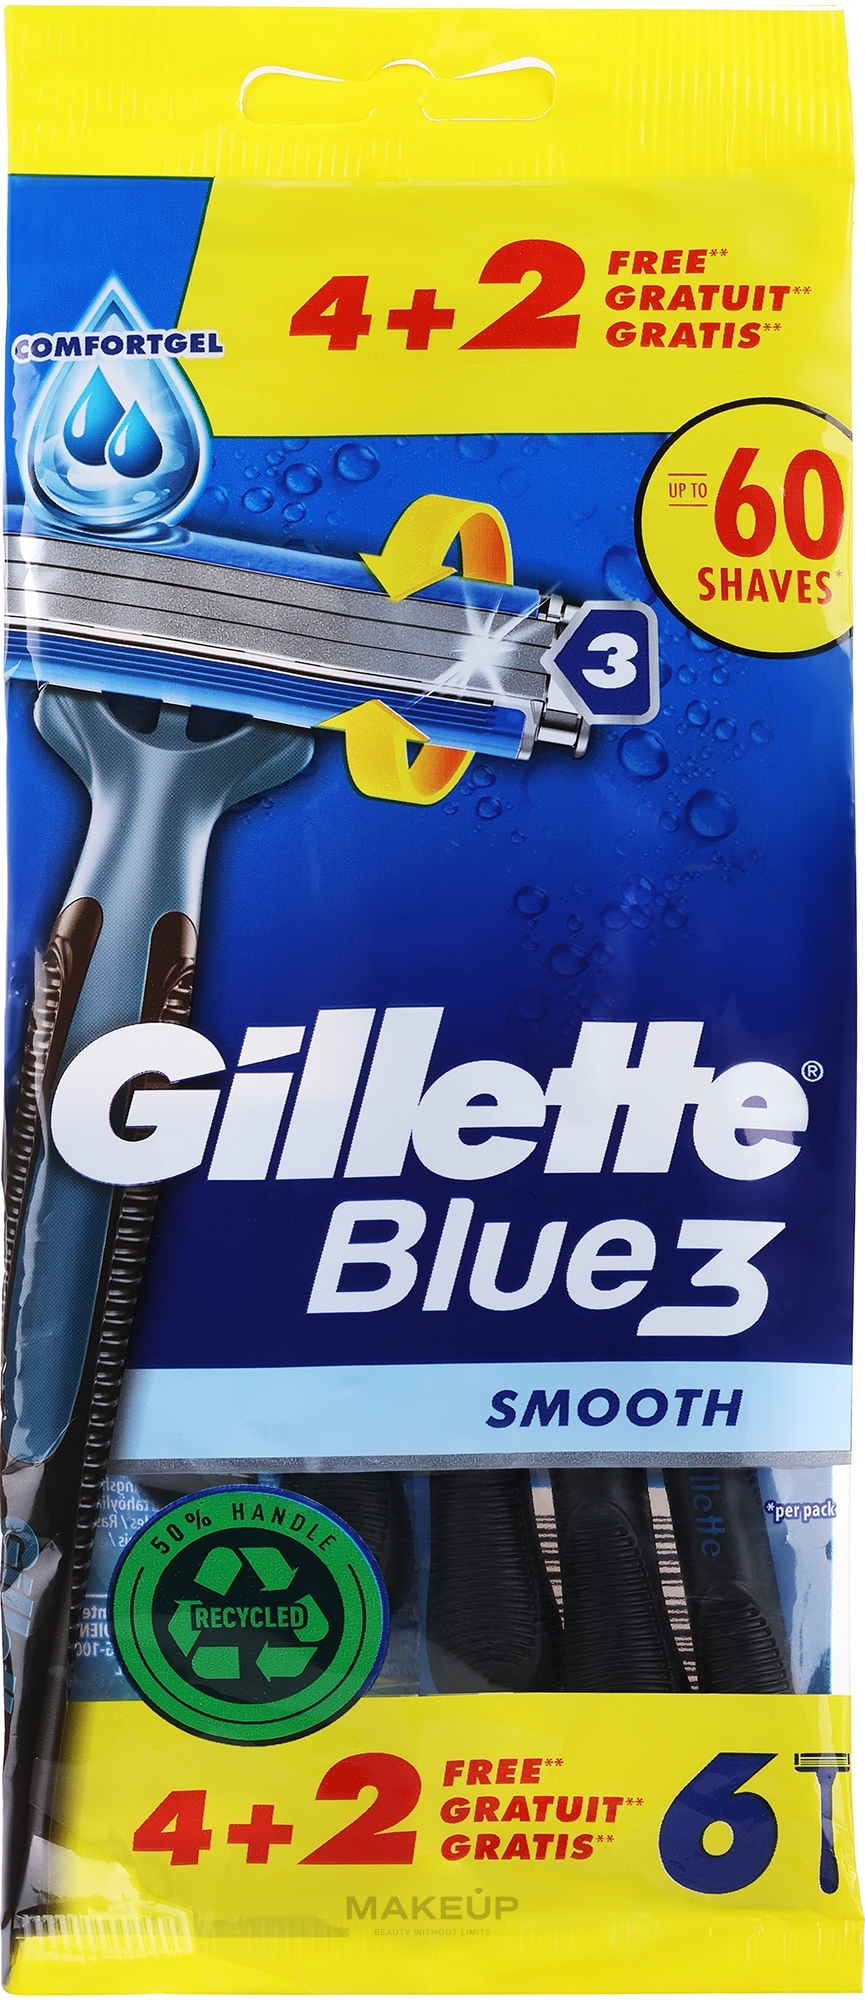 Zestaw jednorazowych maszynek do golenia, 4 + 2 szt. - Gillette Blue 3 Smooth — Zdjęcie 6 szt.